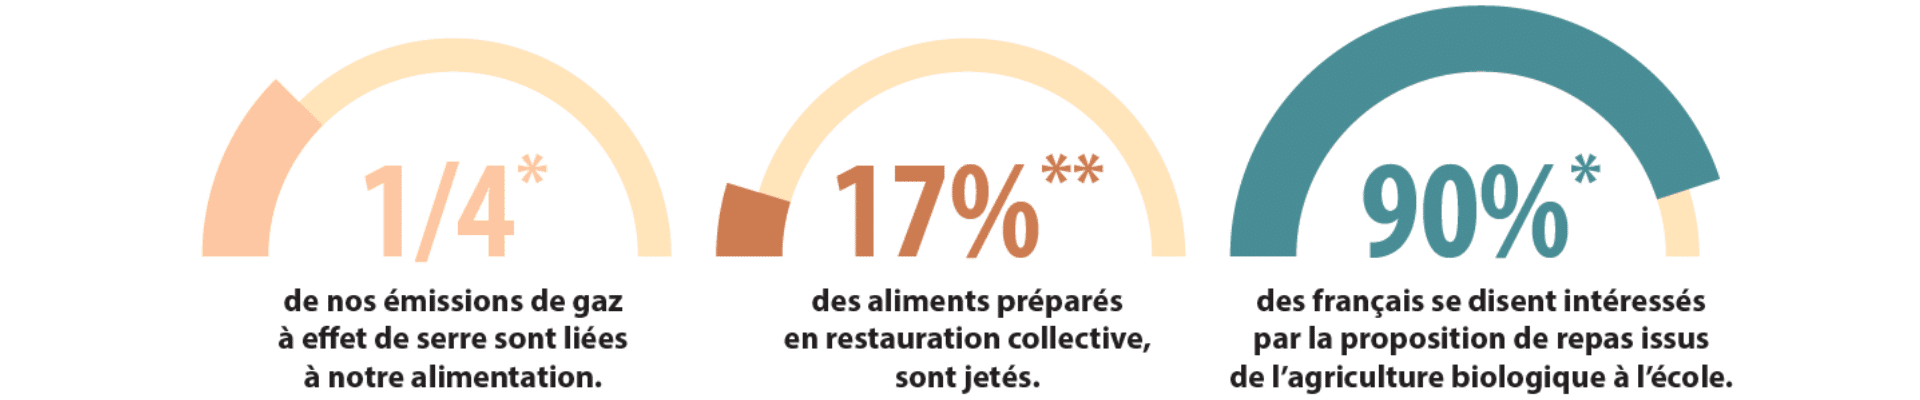 Pourcentages - émissions de gaz à effets de serre, des aliments préparés en restauration collective et des français intéressés par le bio à l'école